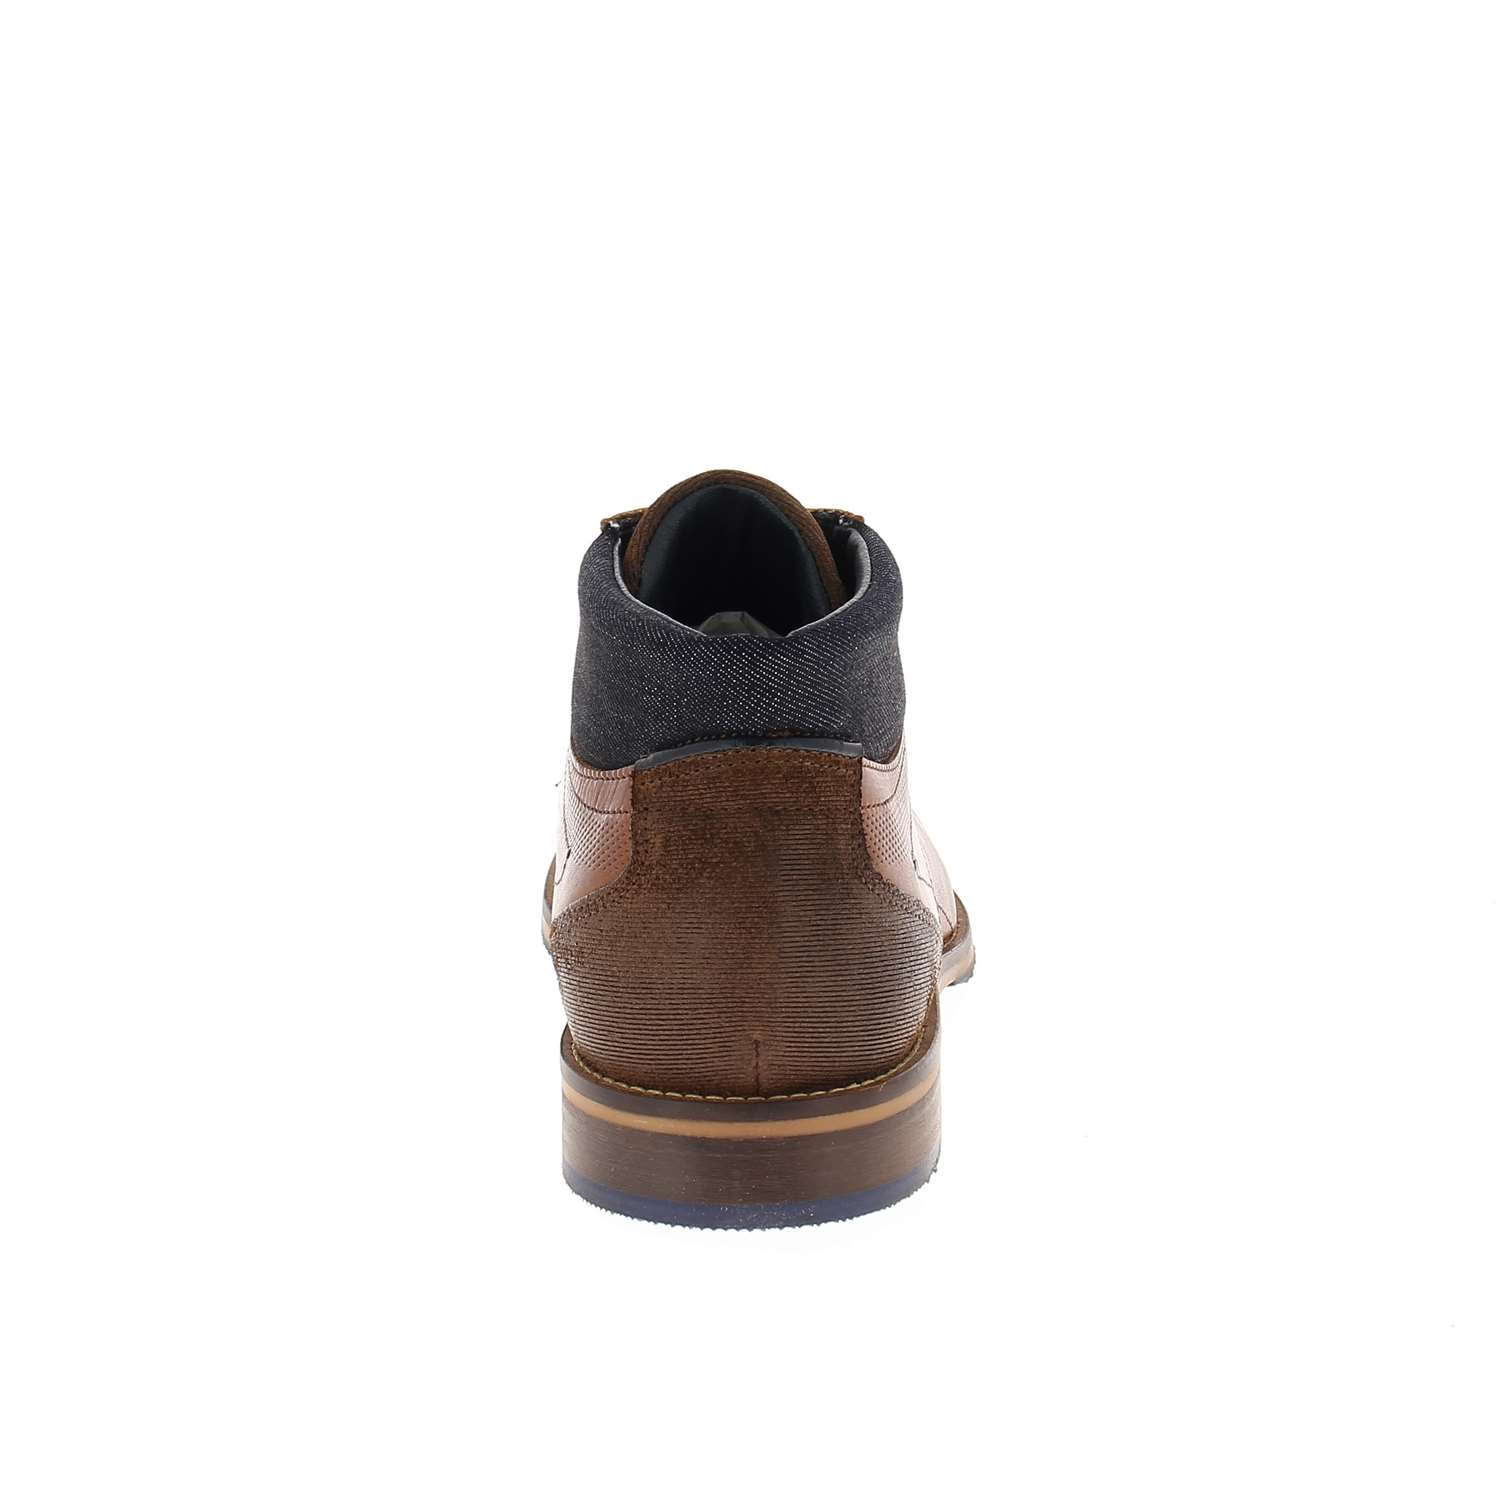 04 - VARESH ANKLE LACE - BULLBOXER - Chaussures à lacets - Cuir